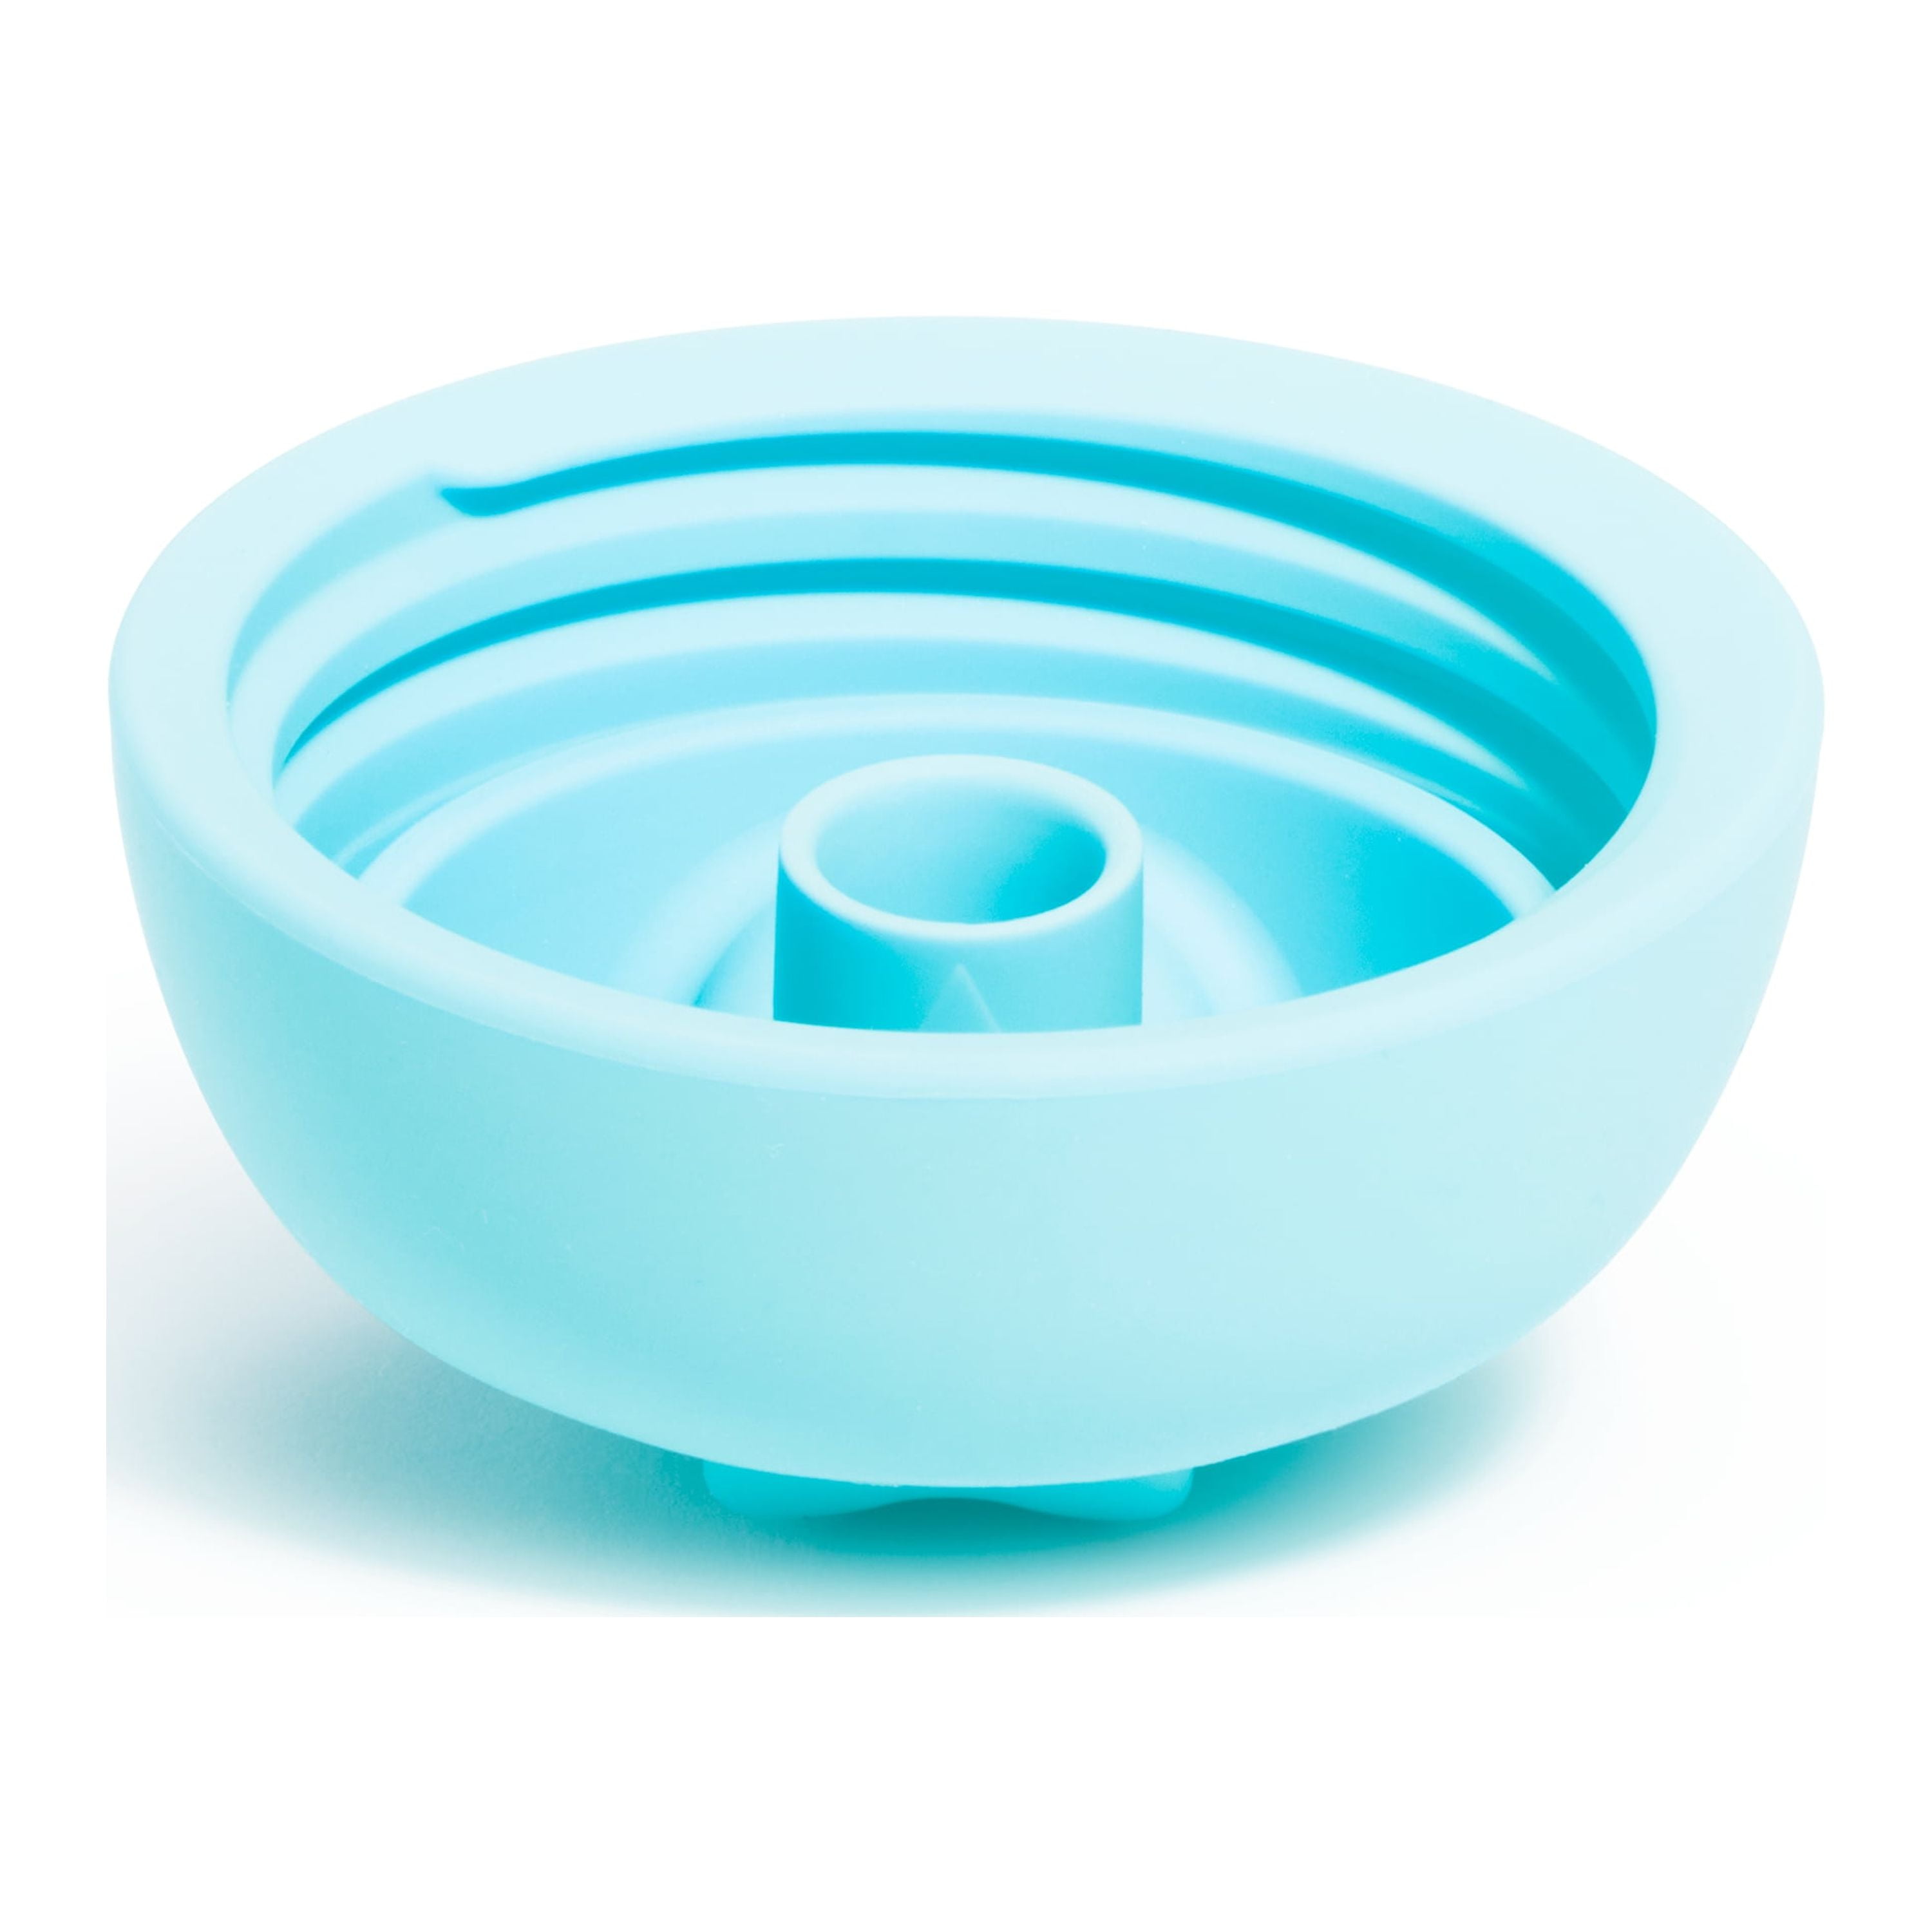 Munchkin® Simple Clean™ - Vaso para beber con popote fácil de limpiar, 10  onzas, paquete de 2, azul/verde